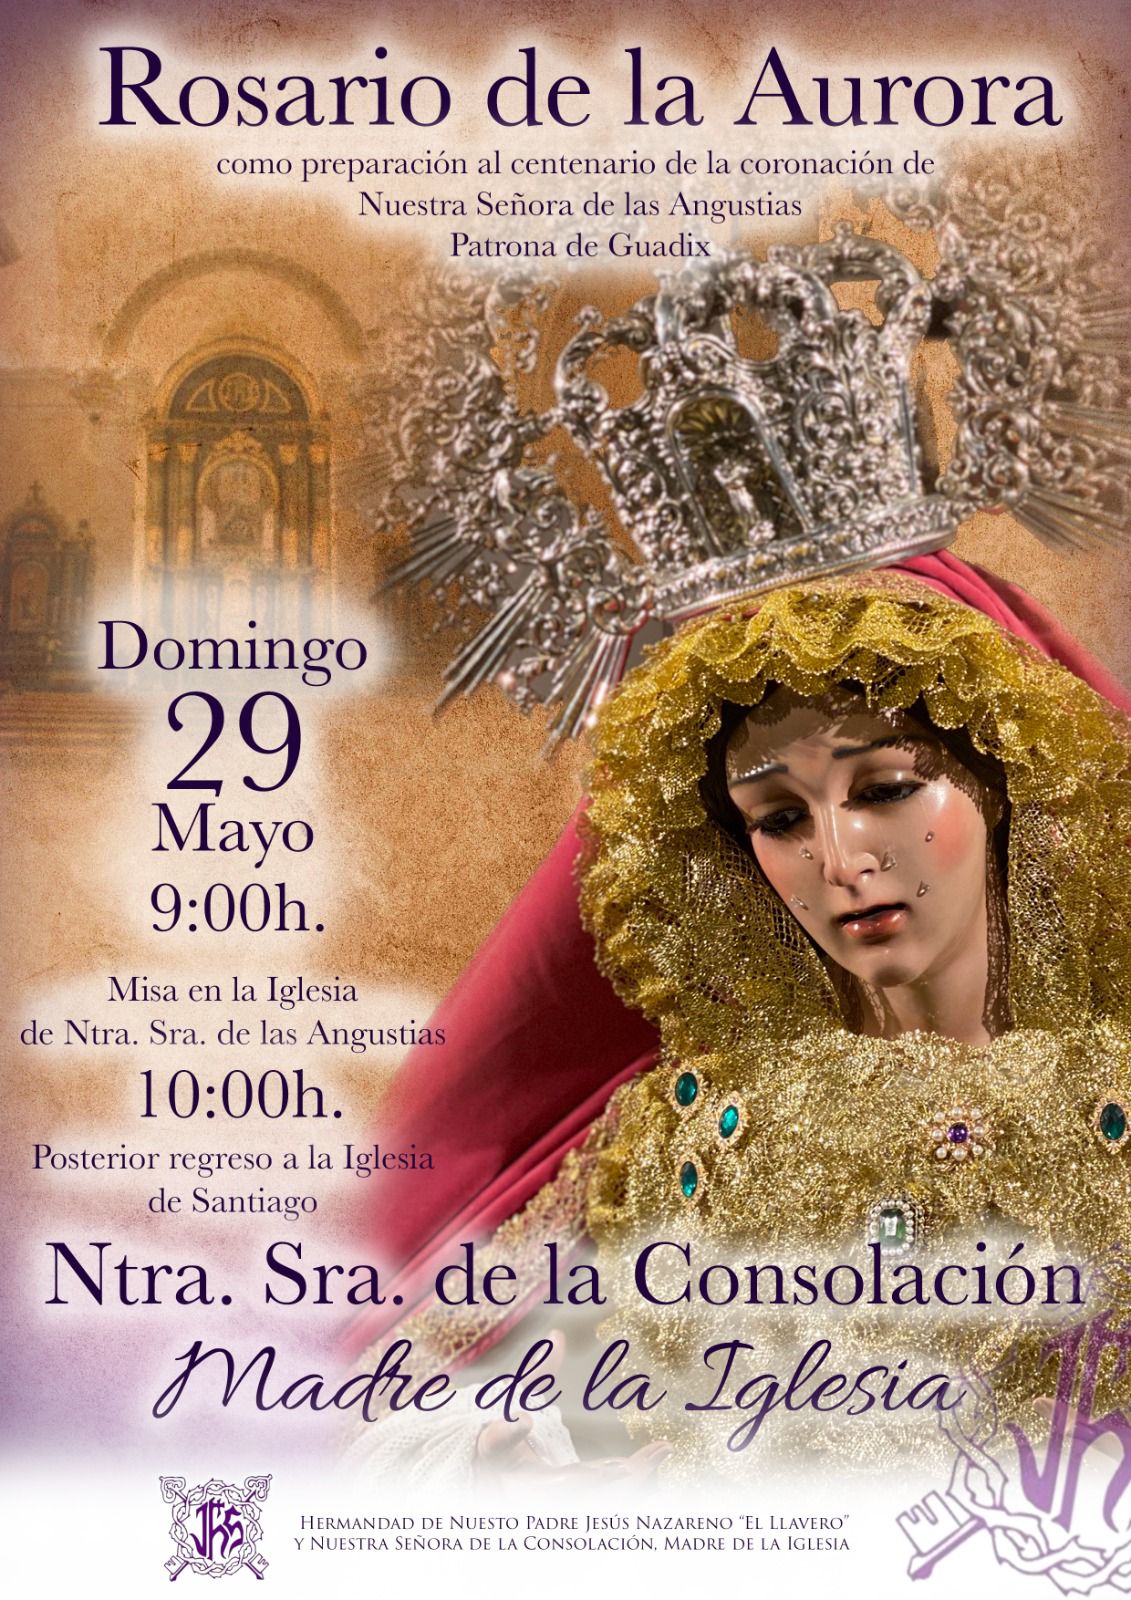 Rosario de la Aurora de Ntra. Sra. de la Consolación, Madre De la Iglesia de Guadix saldrá por primera vez el 29 de mayo.￼